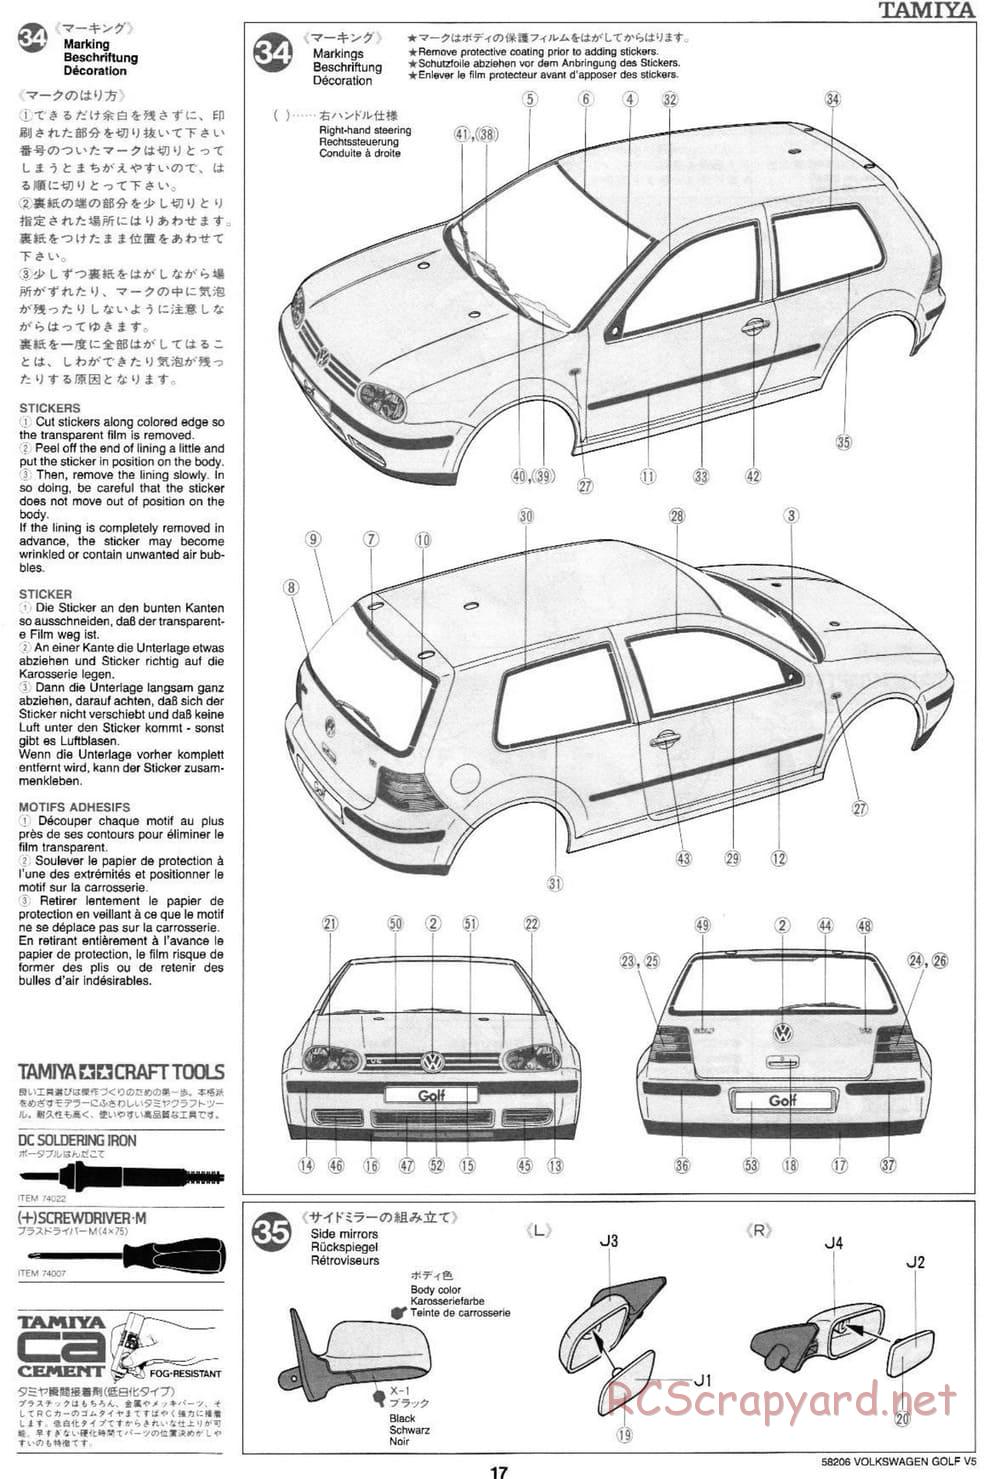 Tamiya - Volkswagen Golf V5 - FF-01 Chassis - Manual - Page 17